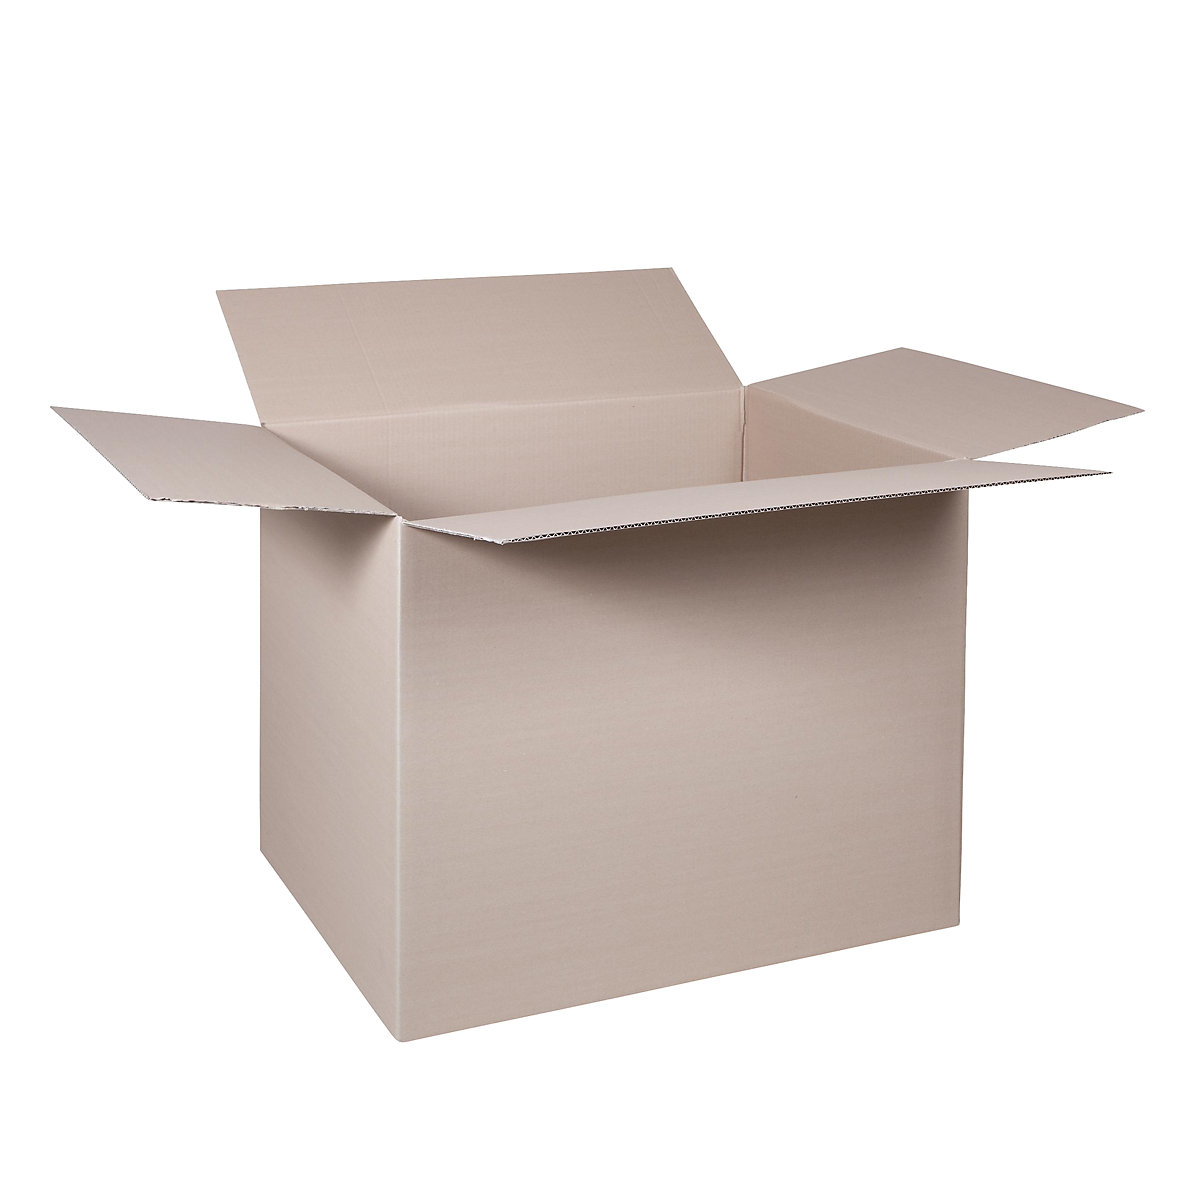 Sklopiva kartonska kutija, FEFCO 0201, od 1-valnog kartona, unutarnje dimenzije 600 x 400 x 400 mm, pak. 50 kom.-36